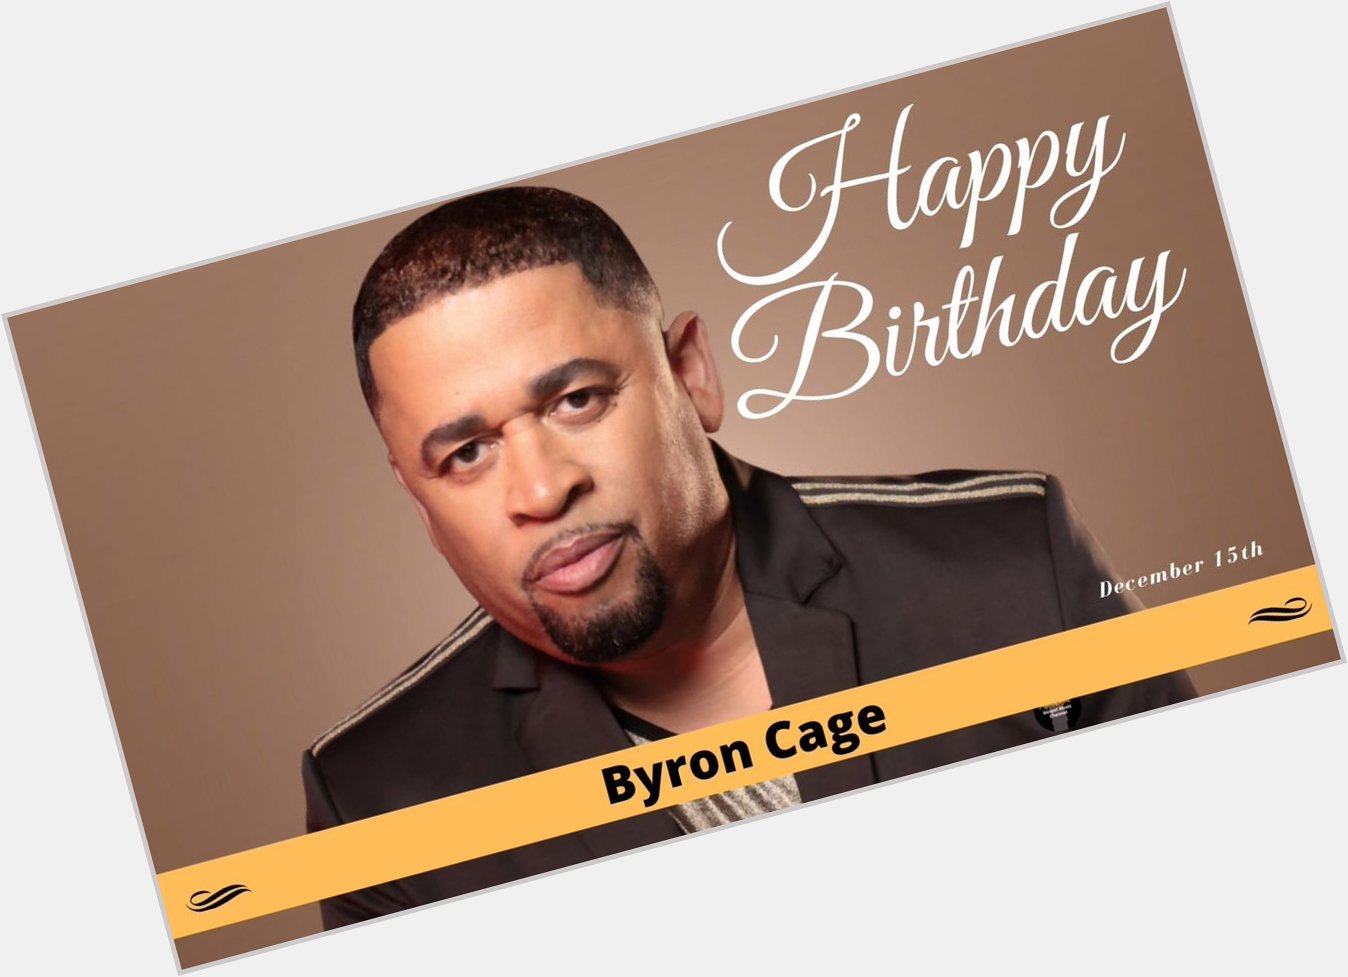 HAPPY BIRTHDAY, Byron Cage!
- 